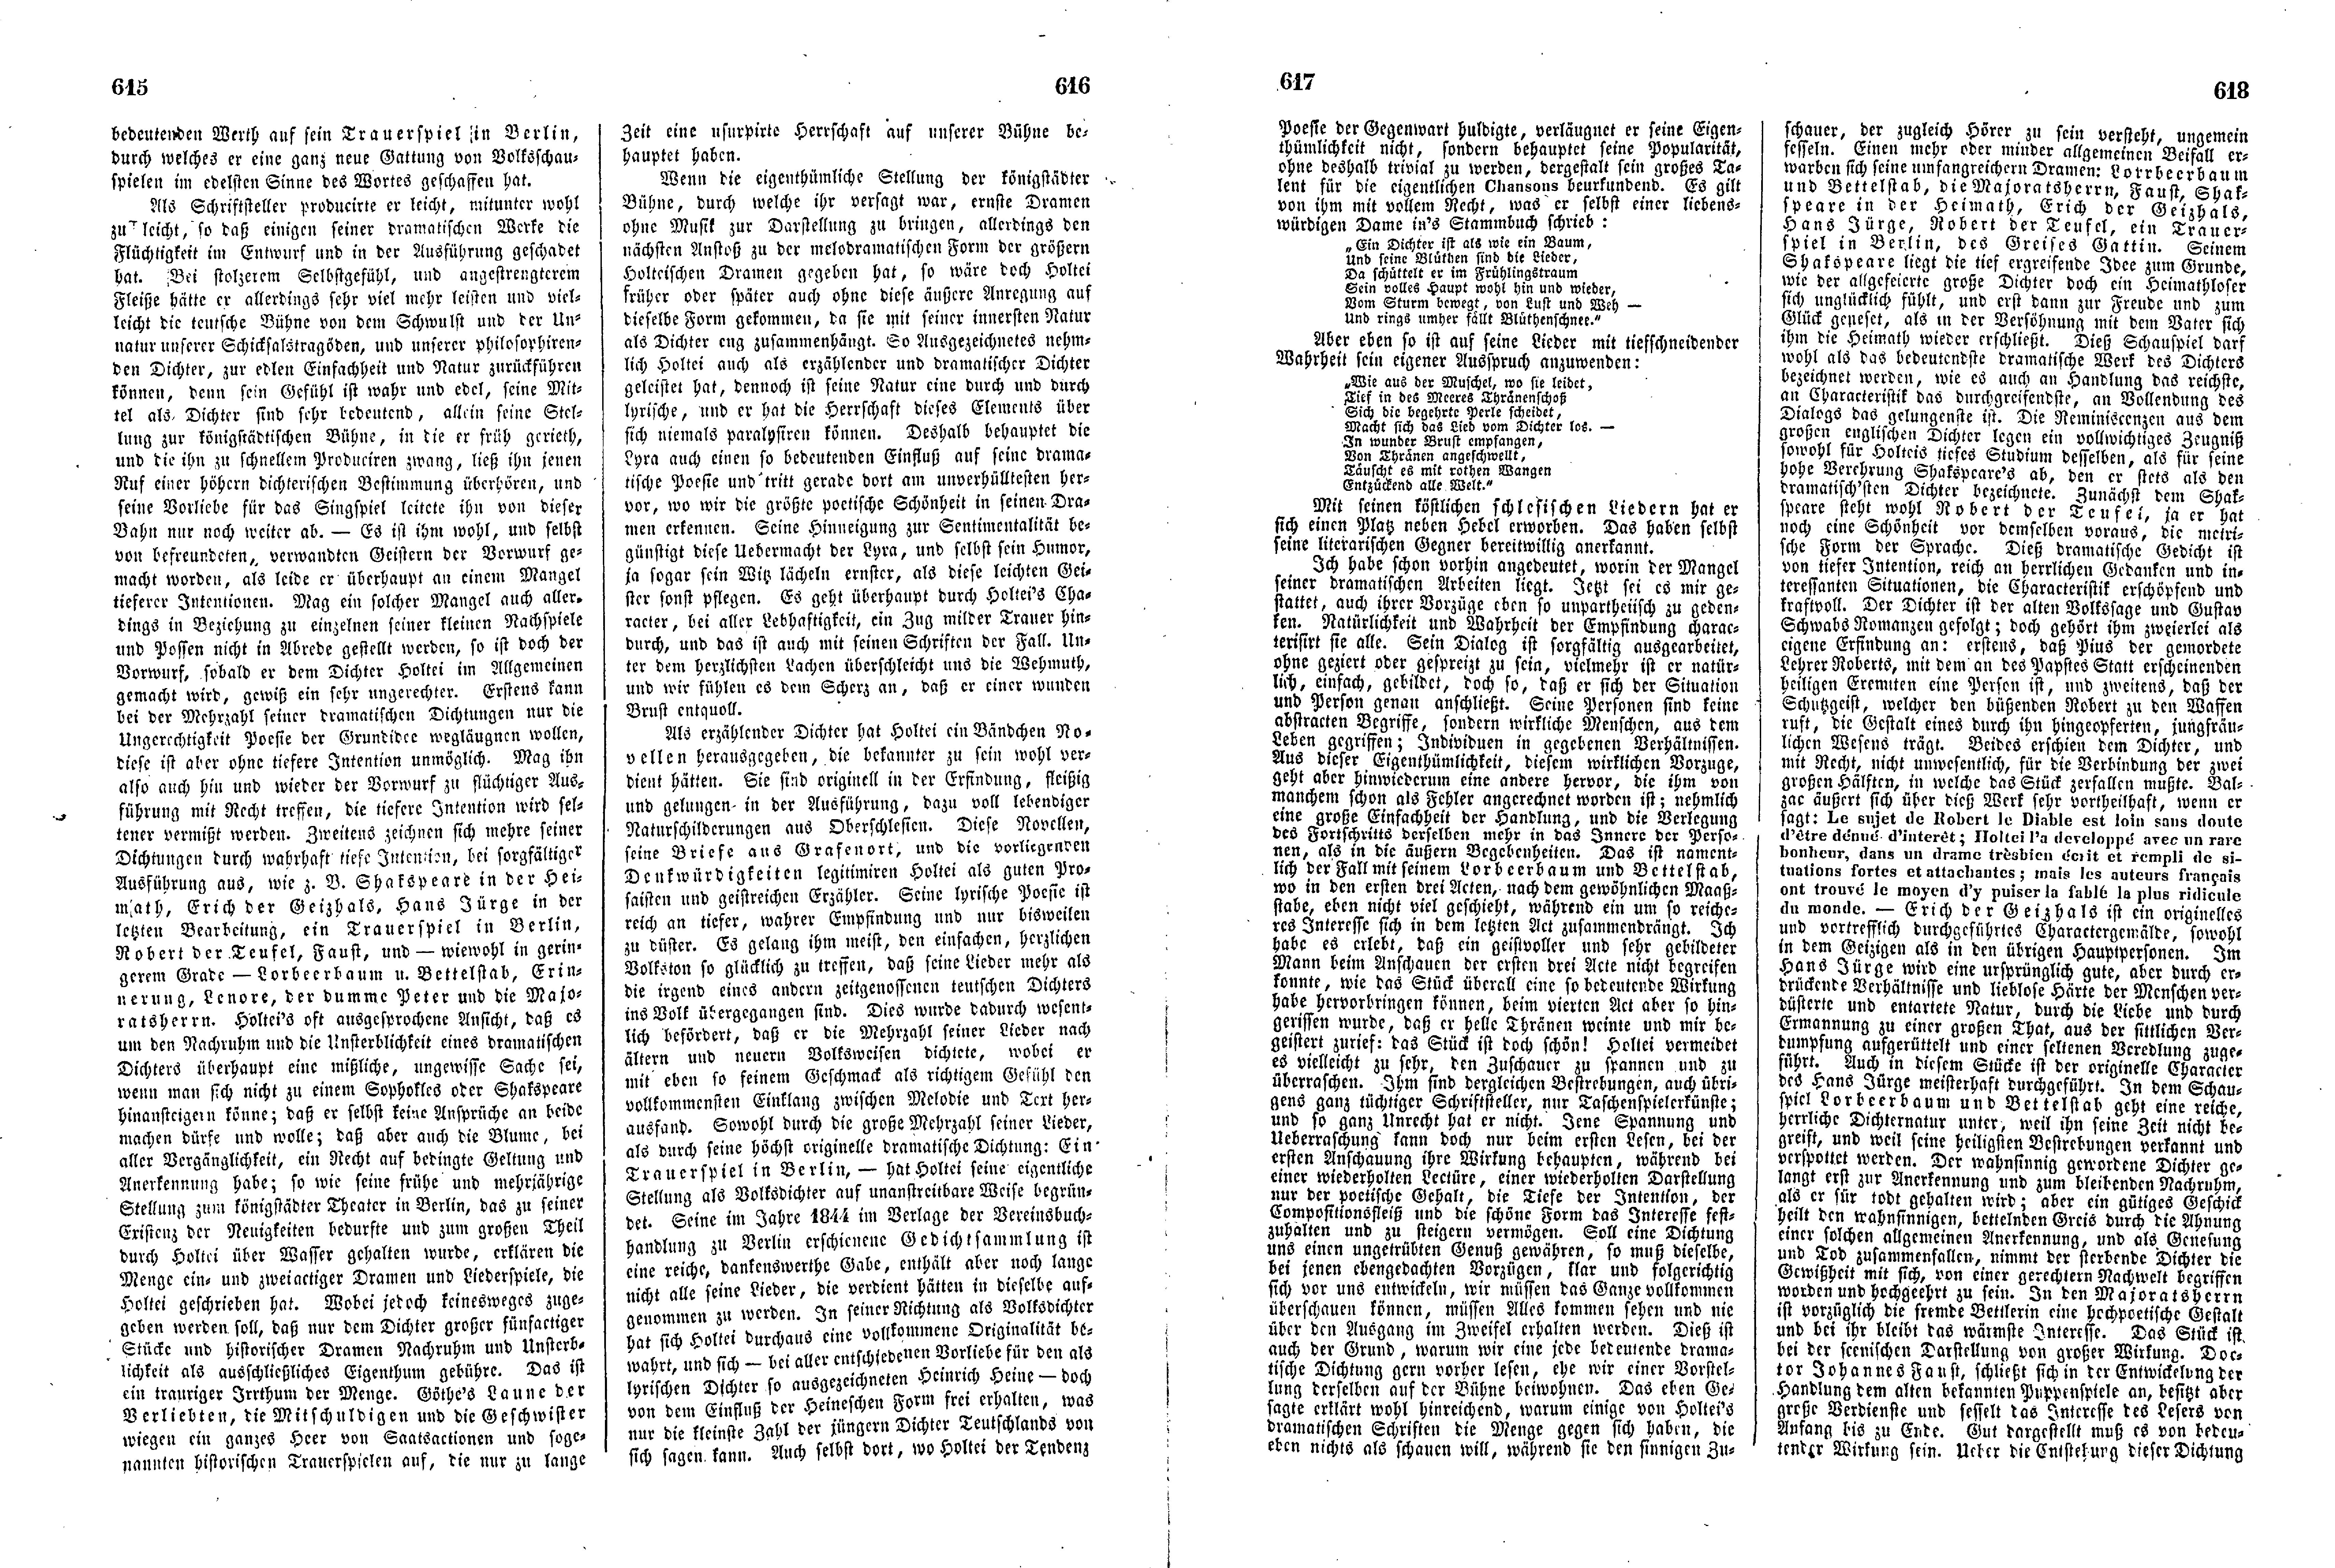 Das Inland [11] (1846) | 159. (615-618) Põhitekst